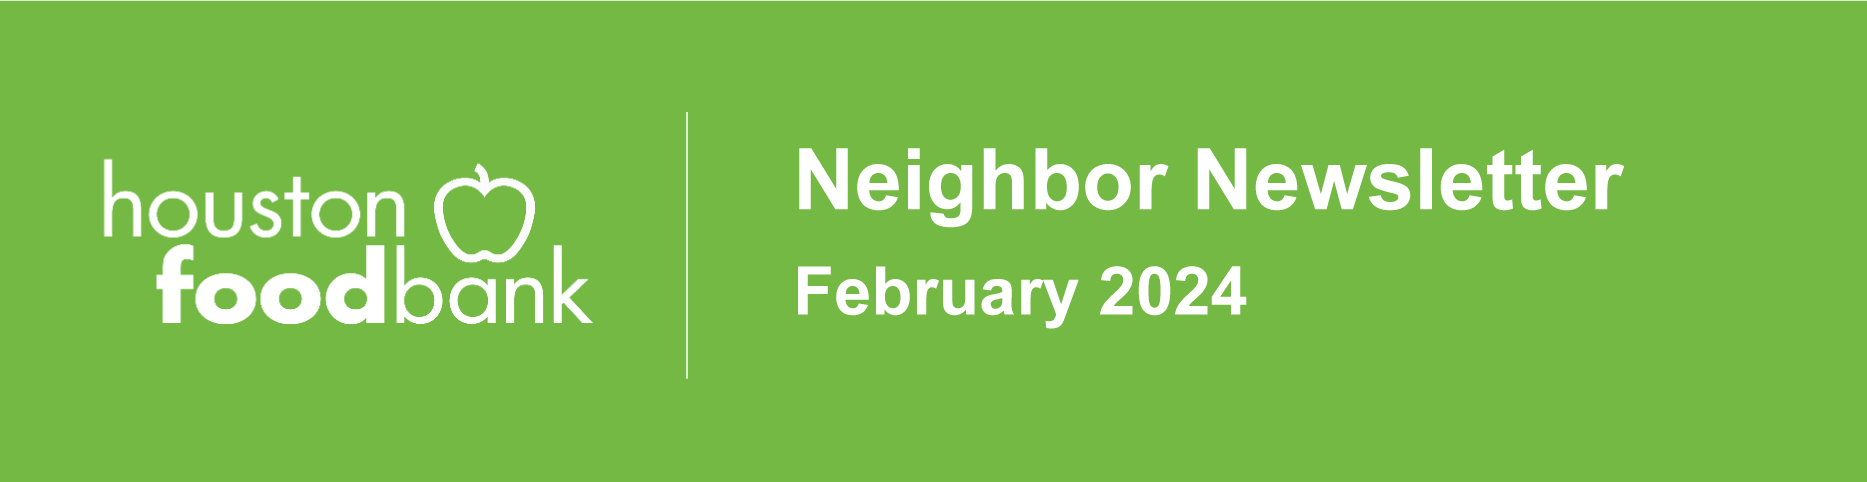 Neighbor Newsletter February 2024